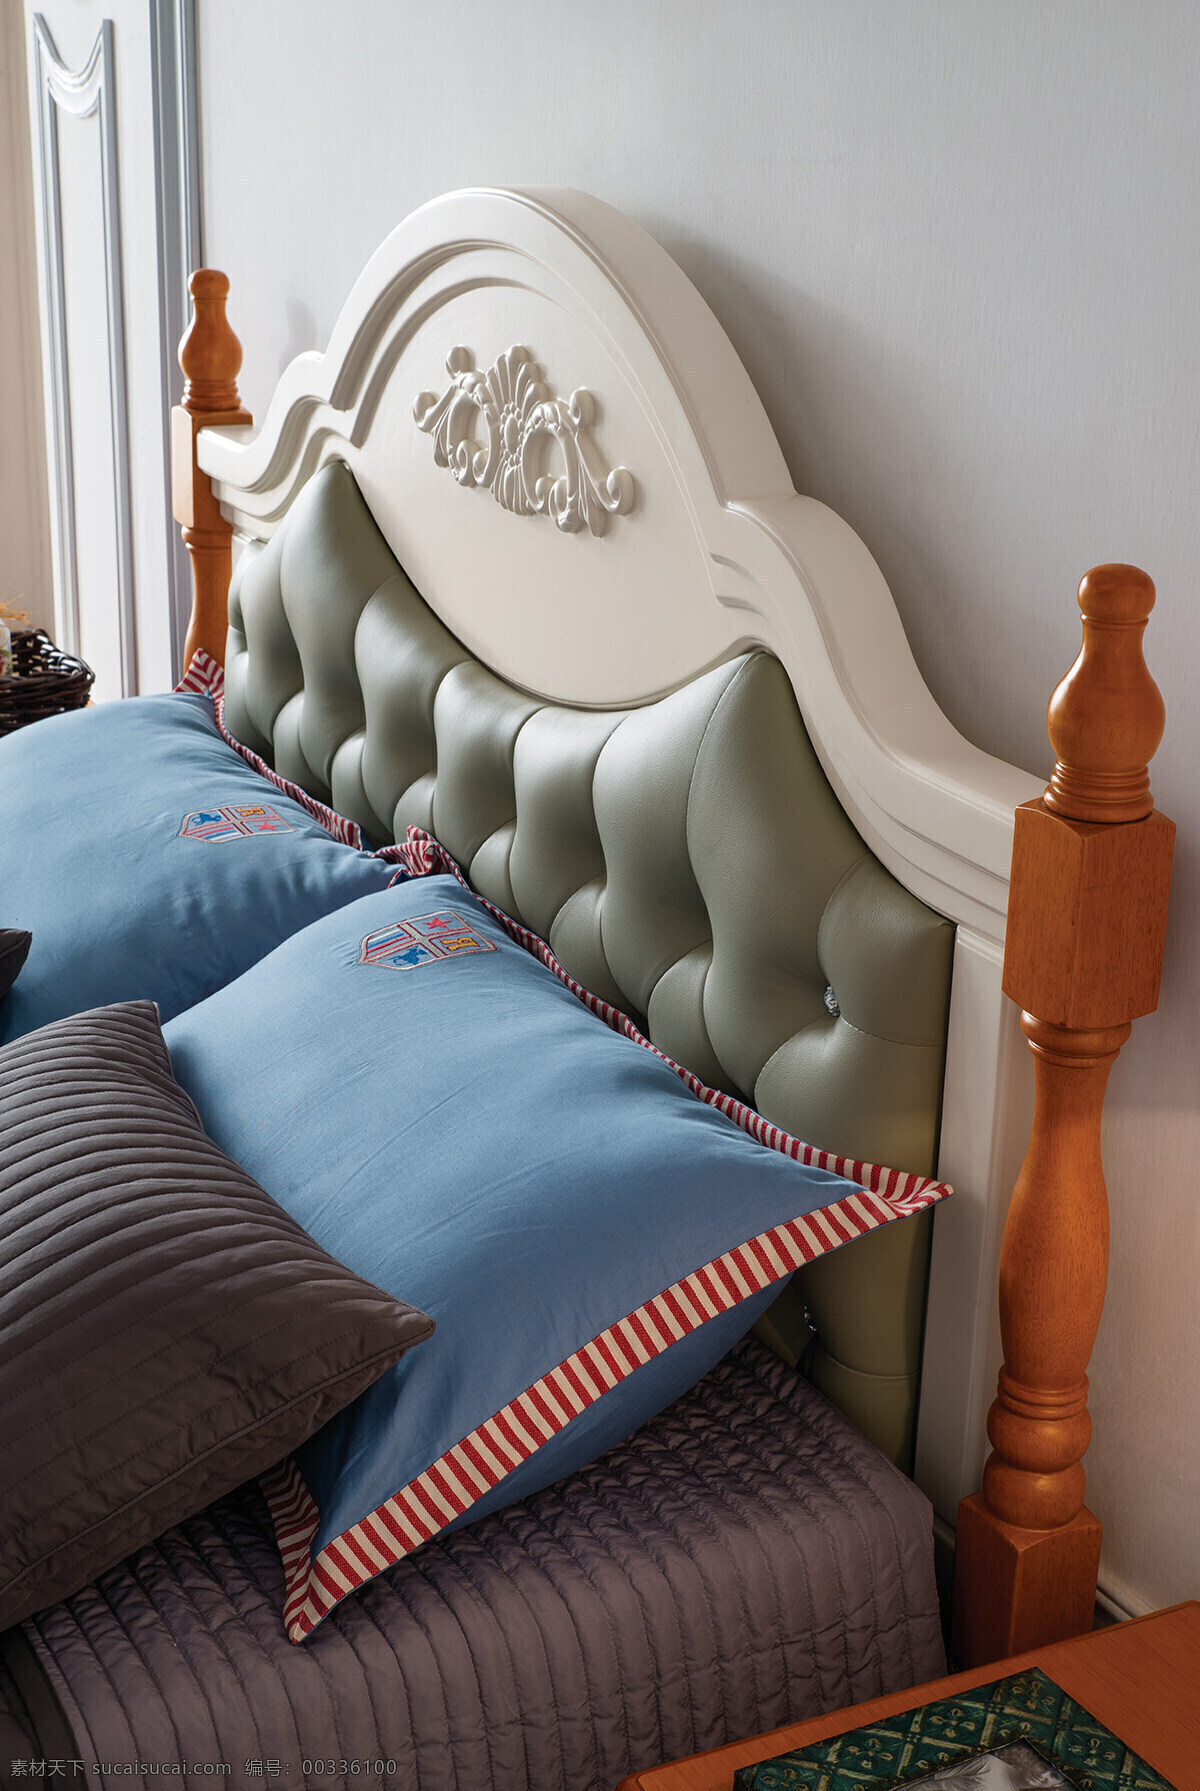 室内 卧室 欧式 奢华 简洁 床头 效果图 欧式风格 墙纸 室内设计 高清 淡色系